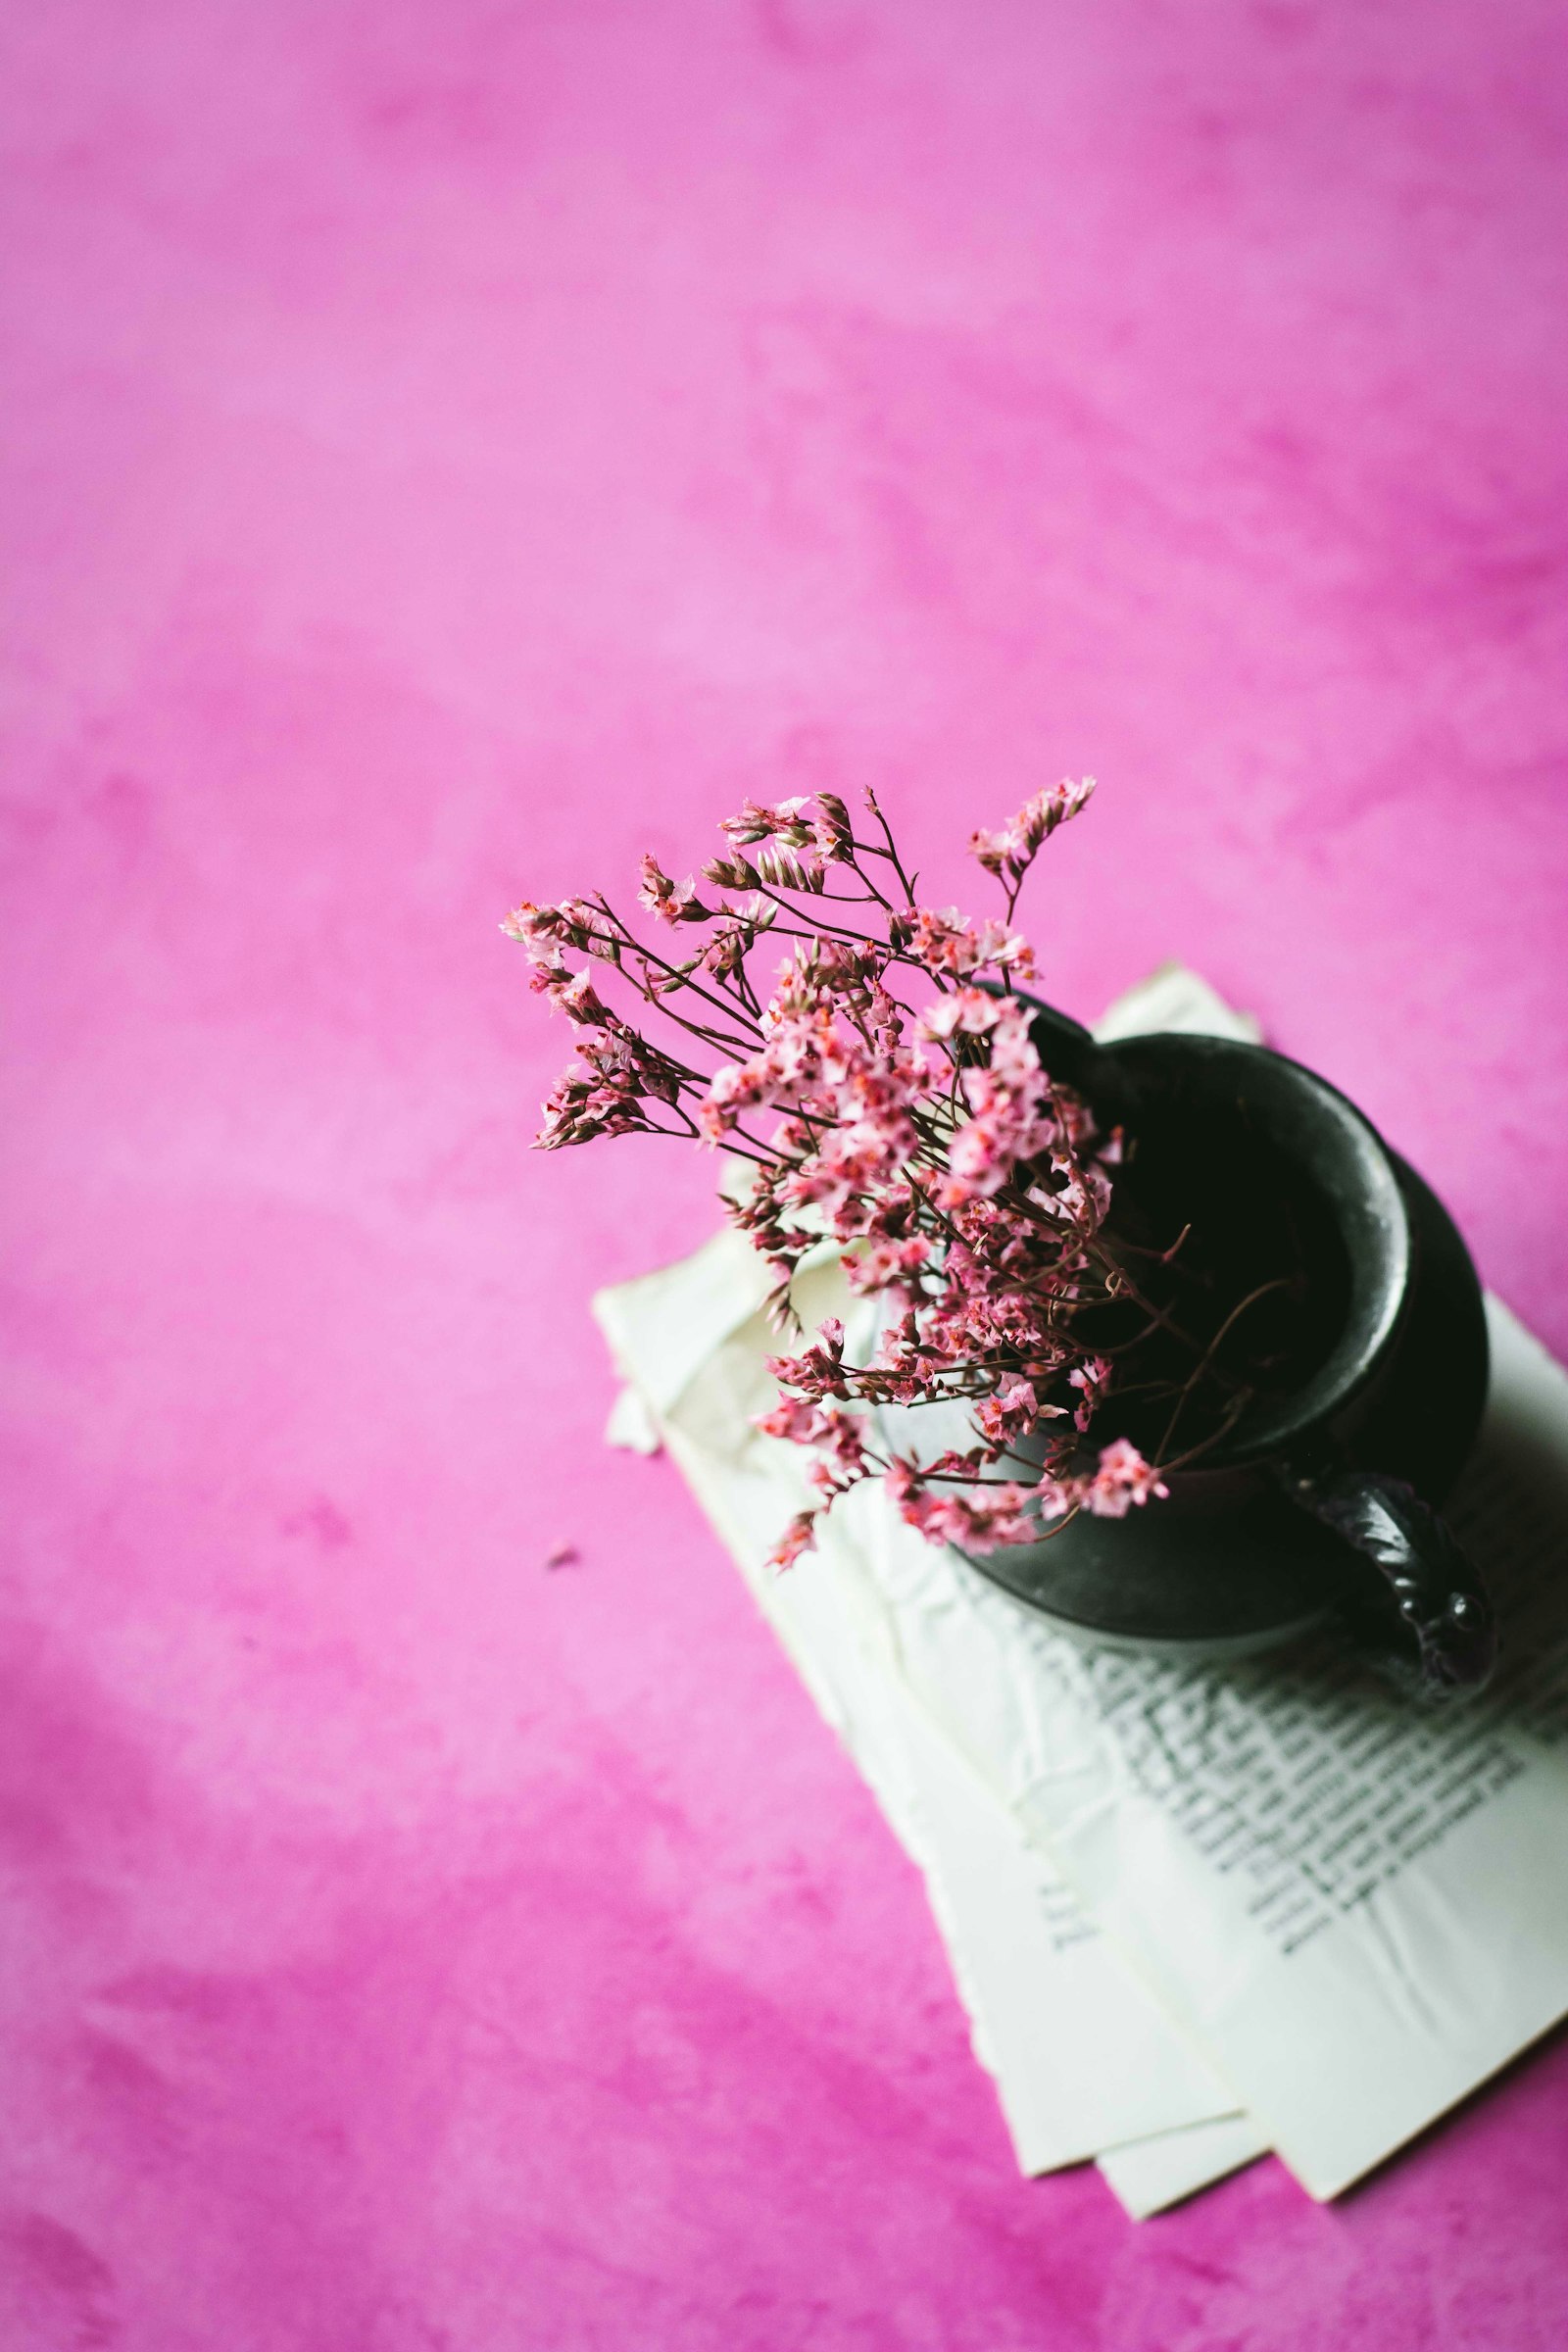 Nikon AF-S Nikkor 50mm F1.8G sample photo. Pink petaled flowers on photography